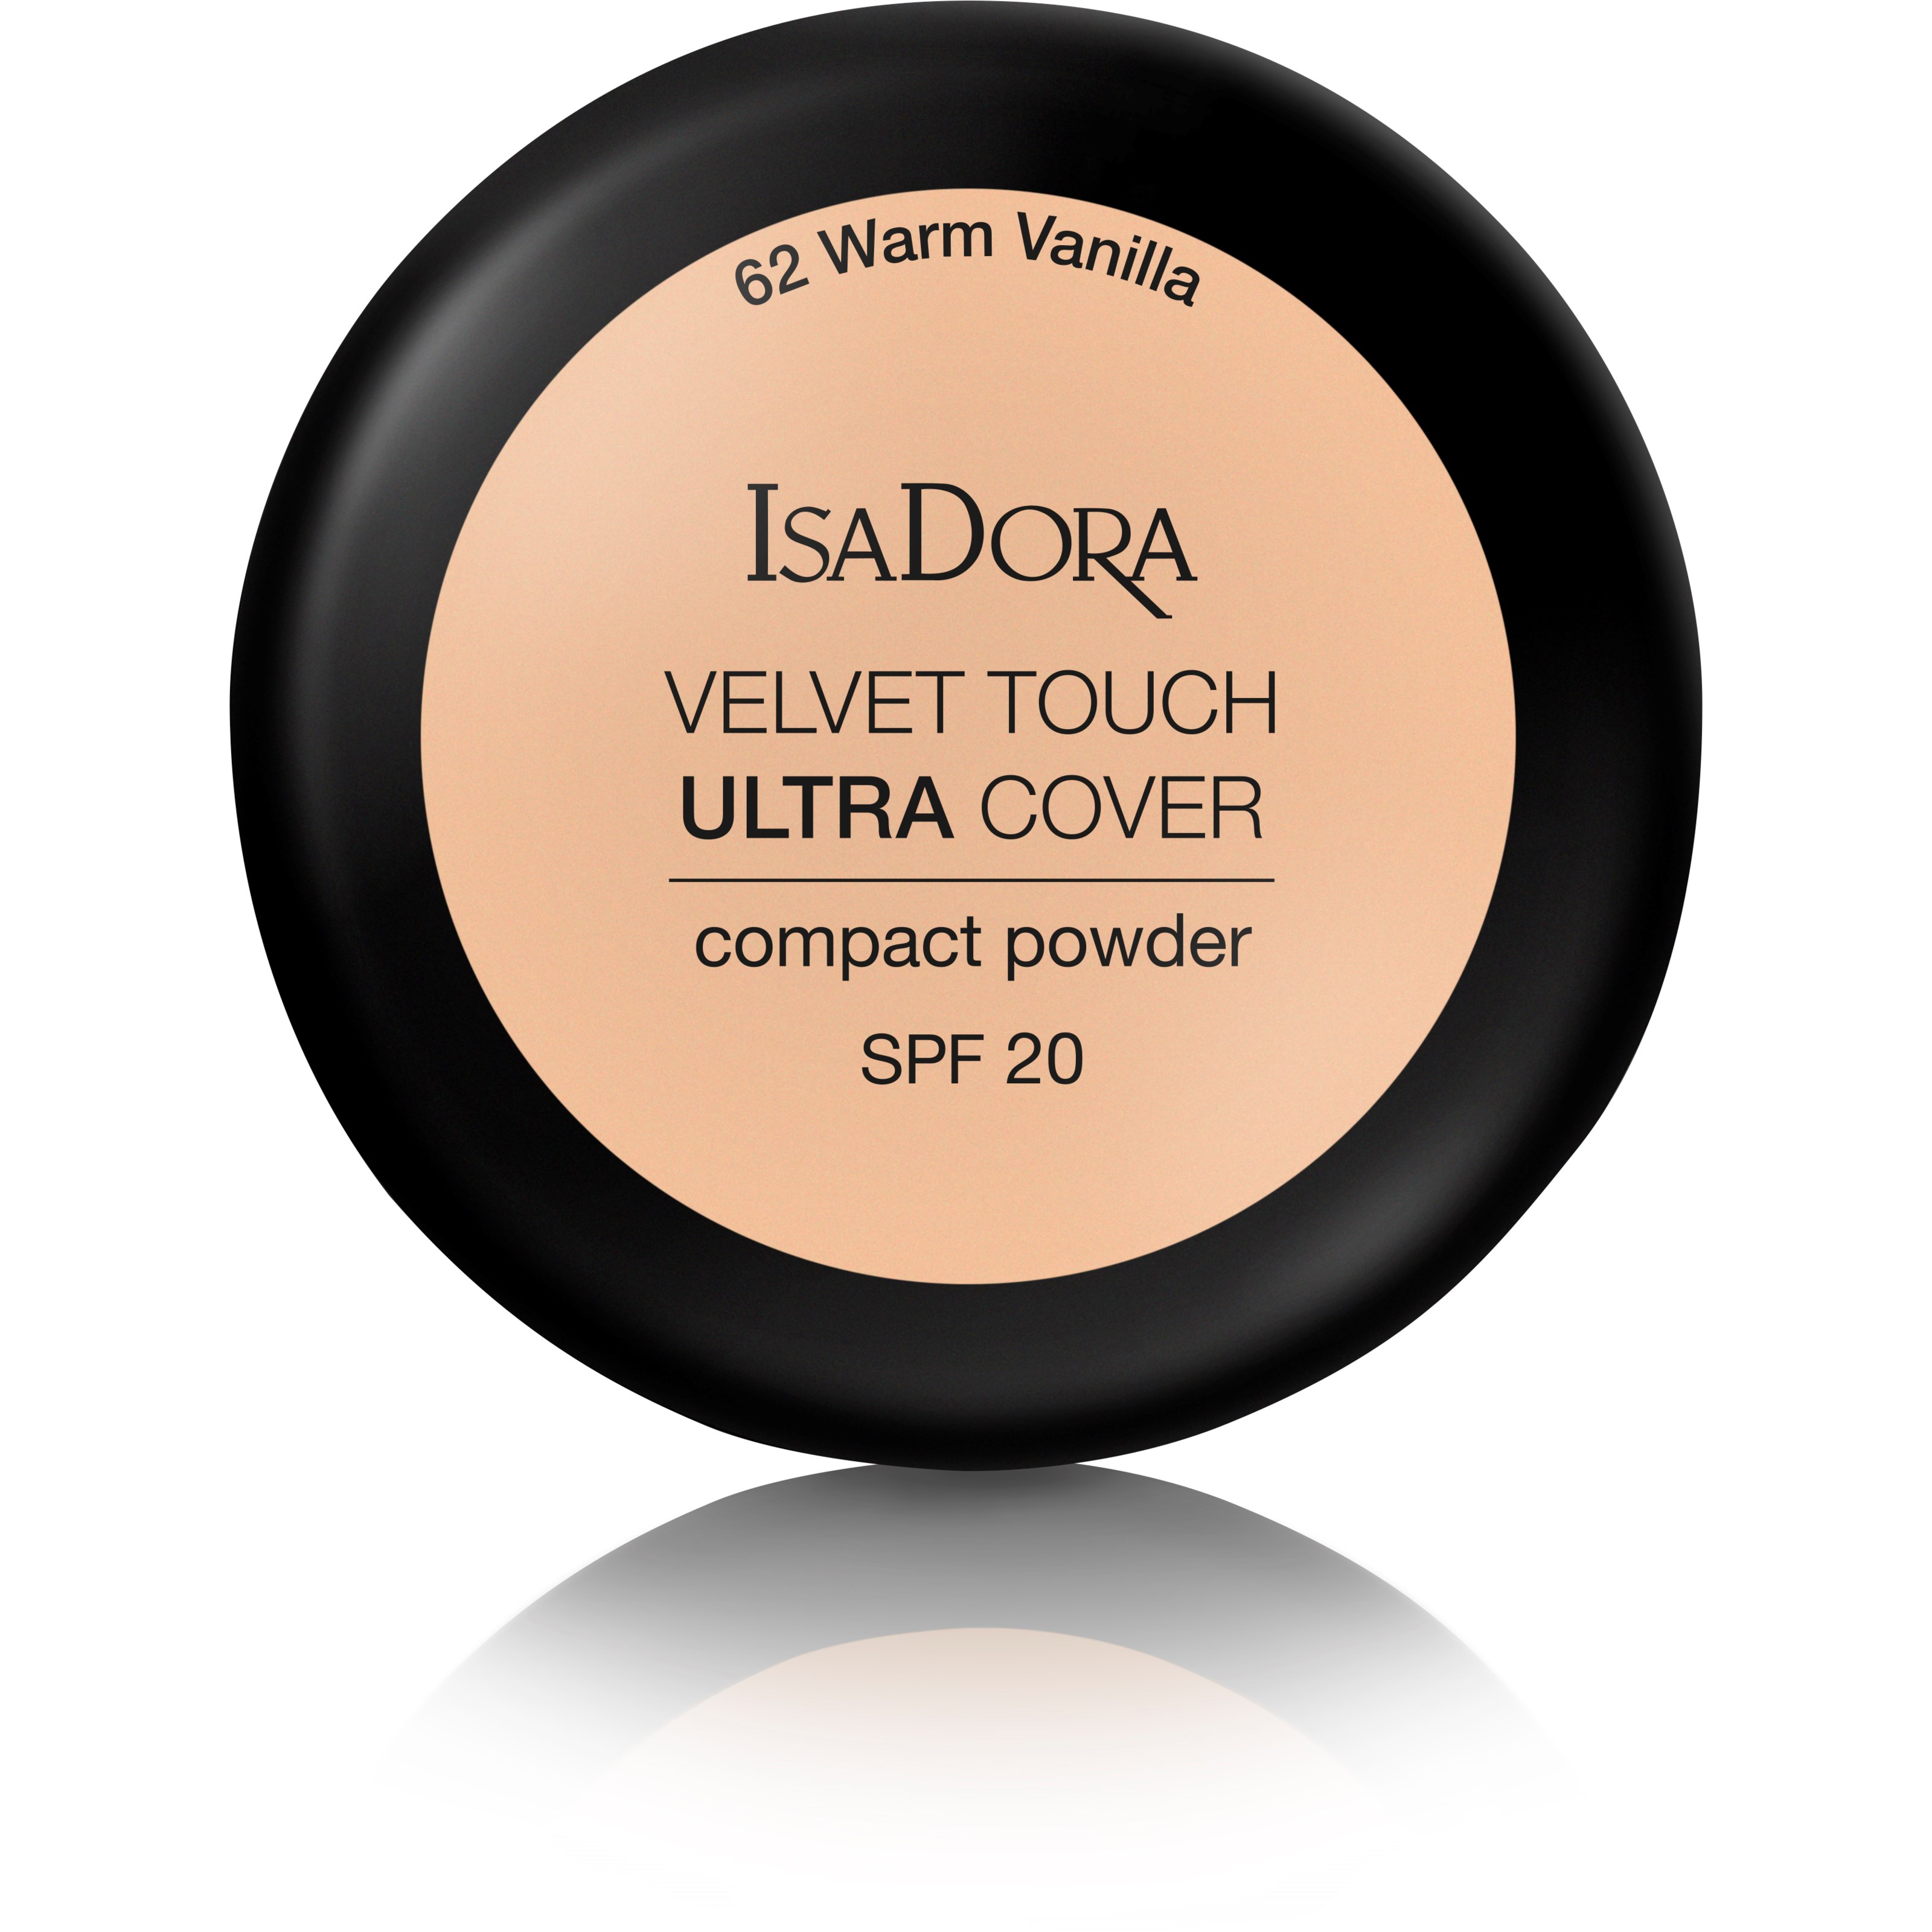 Läs mer om IsaDora Velvet Touch Ultra Cover Compact Power Spf 20 62 Warm Vanilla